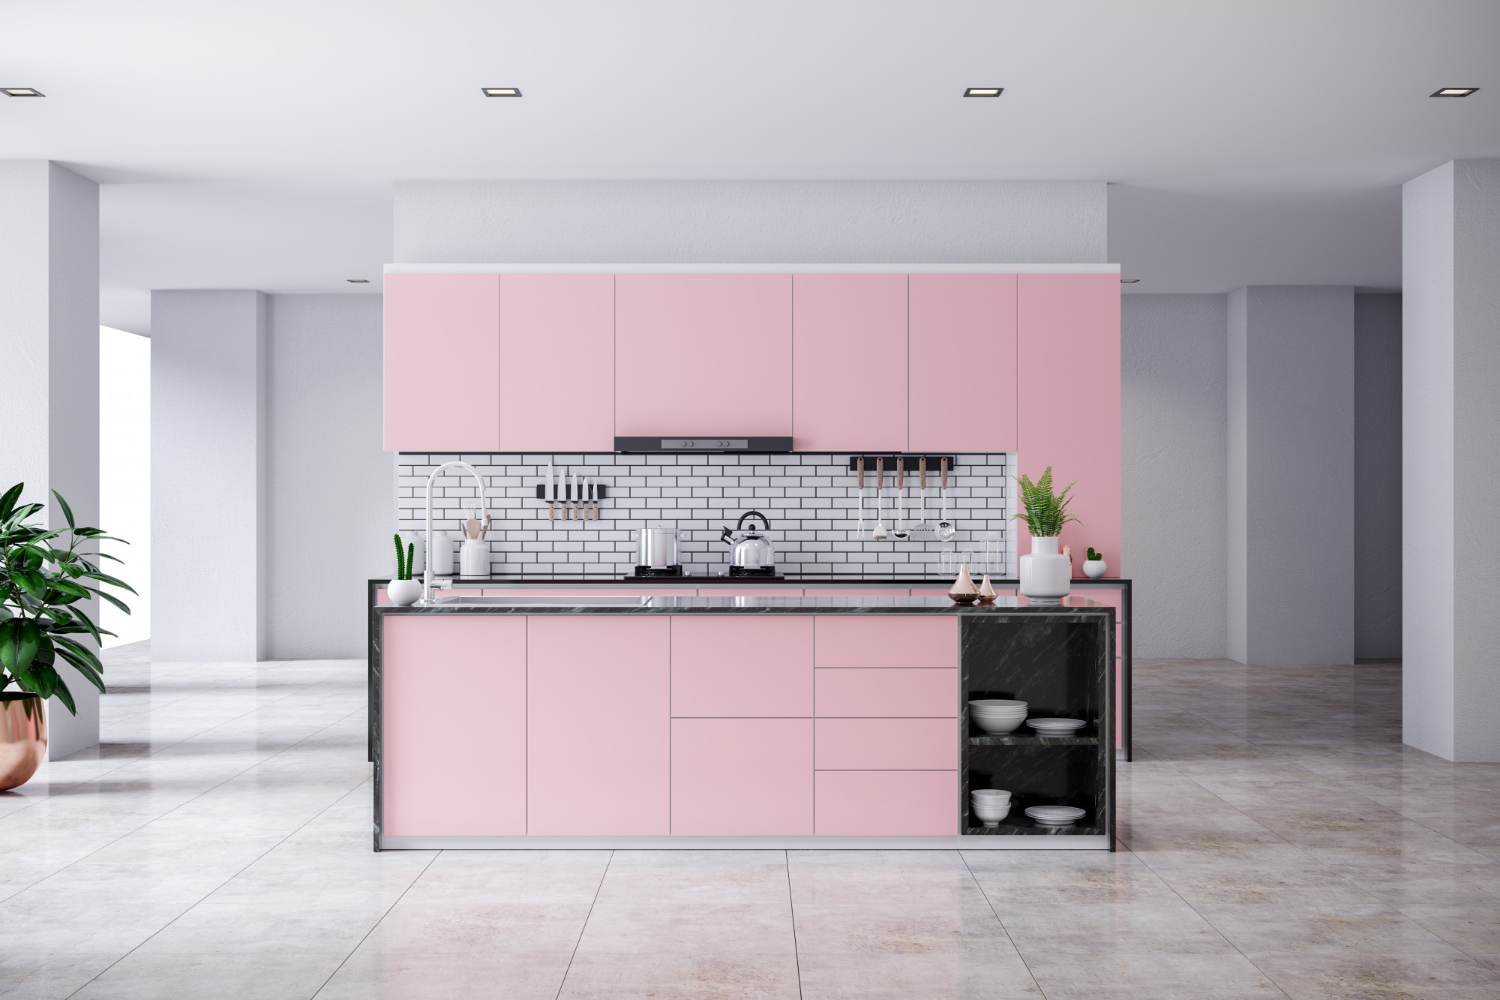 Pilihlah interior dapur yang sesuai dengan kepribadian kamu.